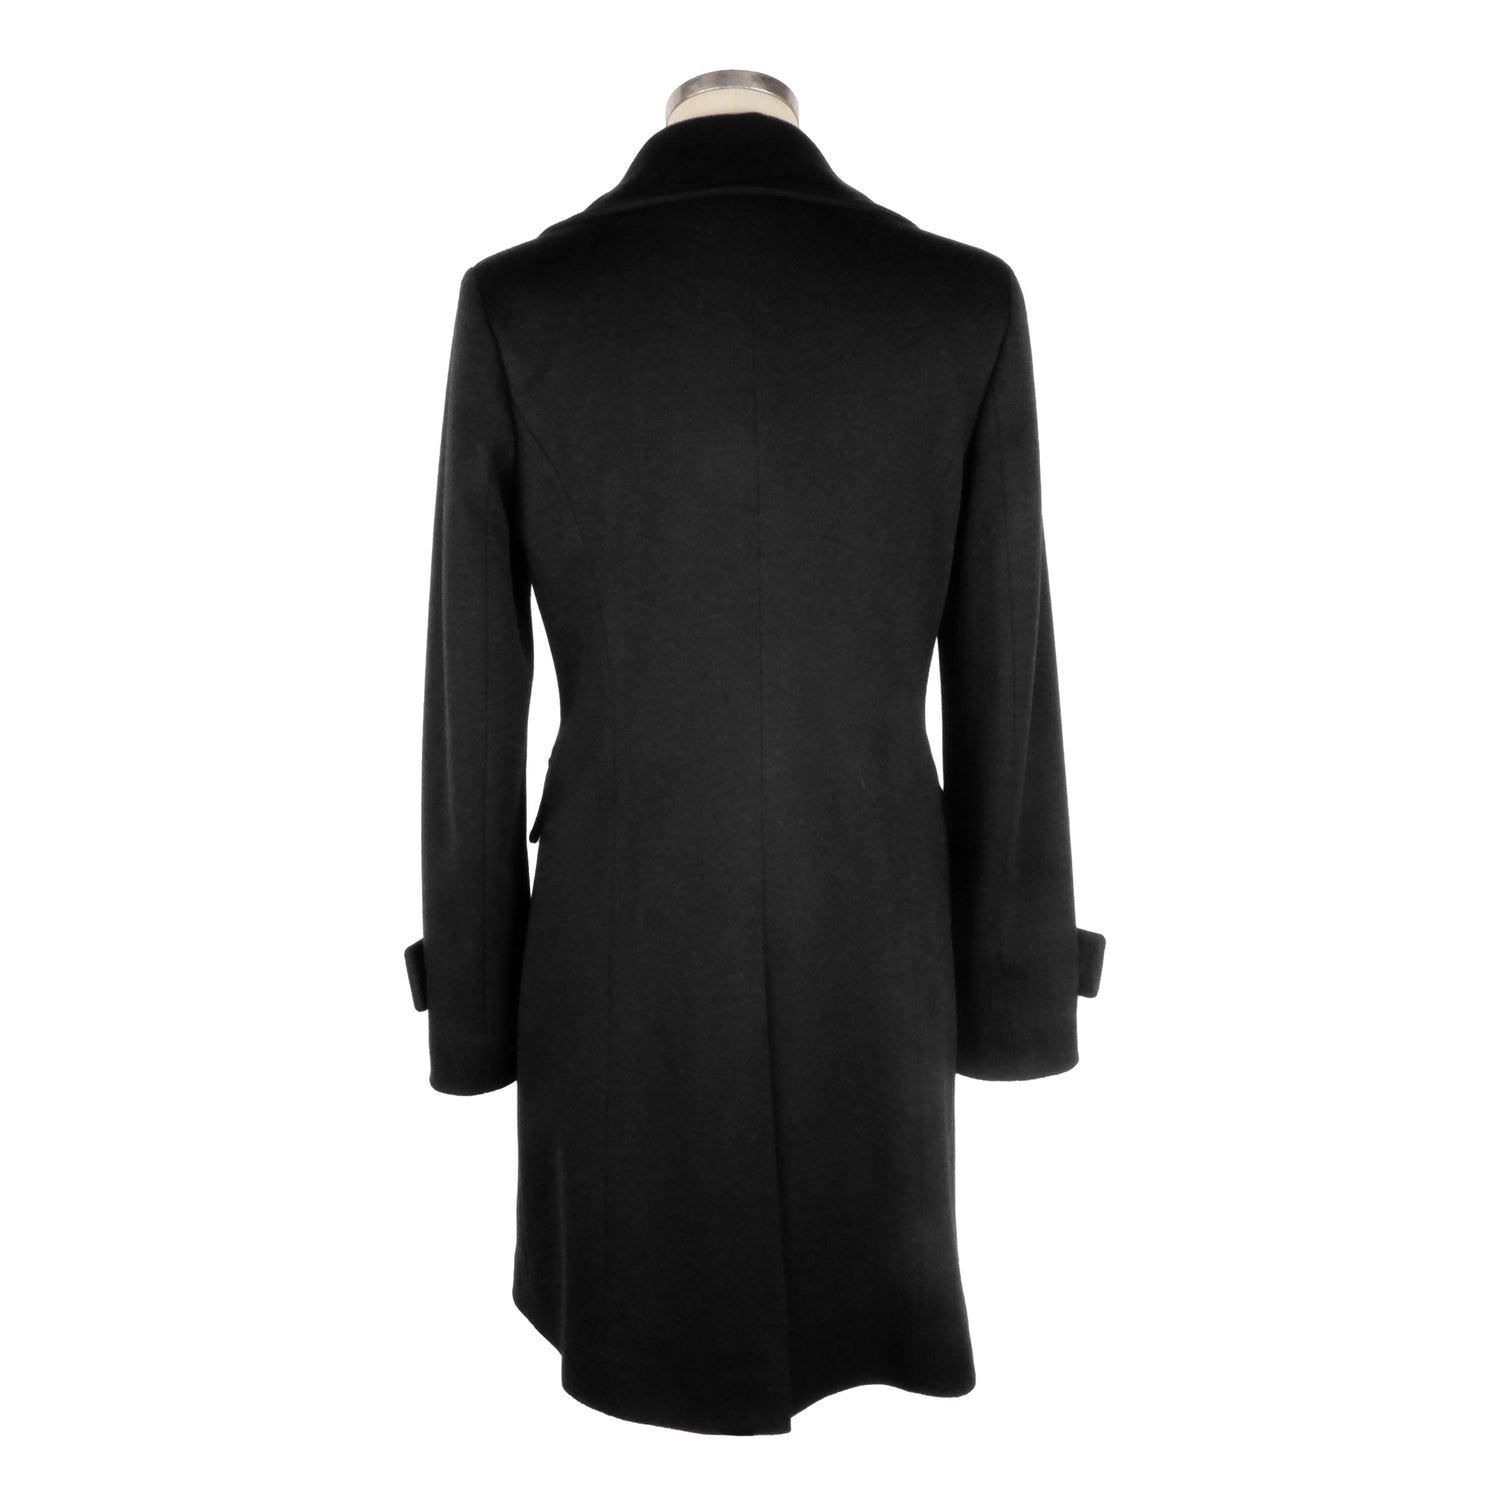 Made in Italy Black Wool Jackets & Coat - DEA STILOSA MILANO